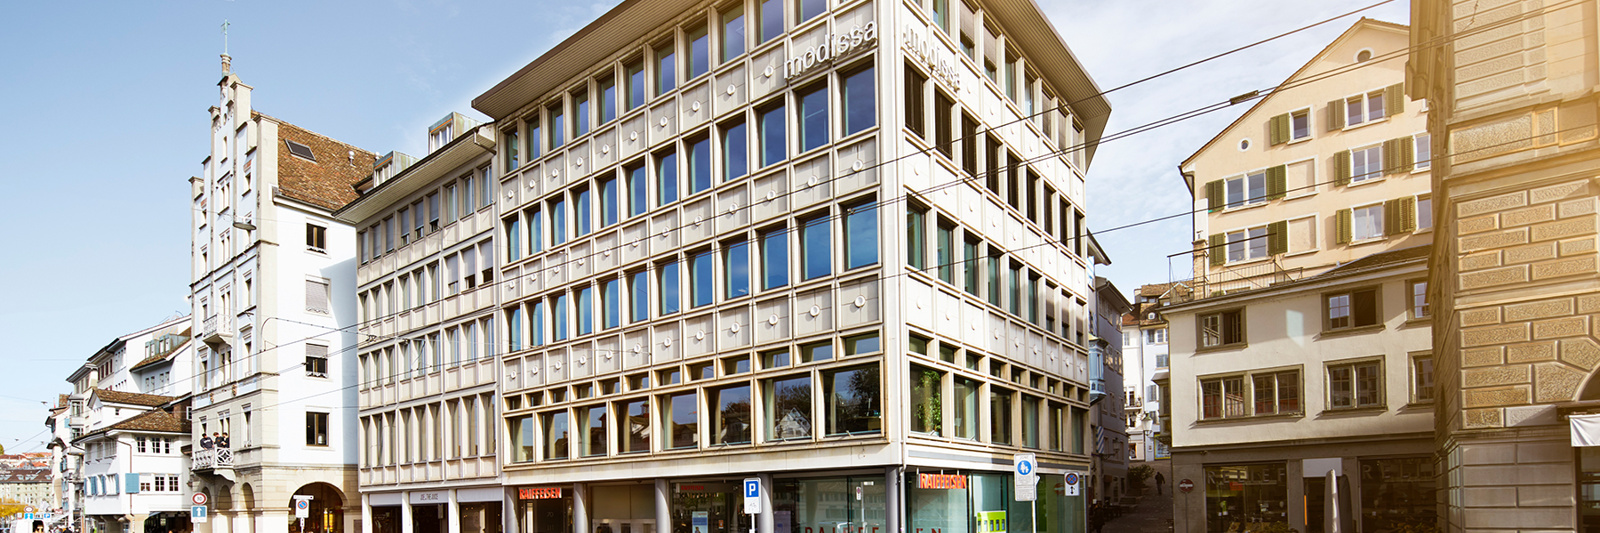 Banque Raiffeisen Zurich